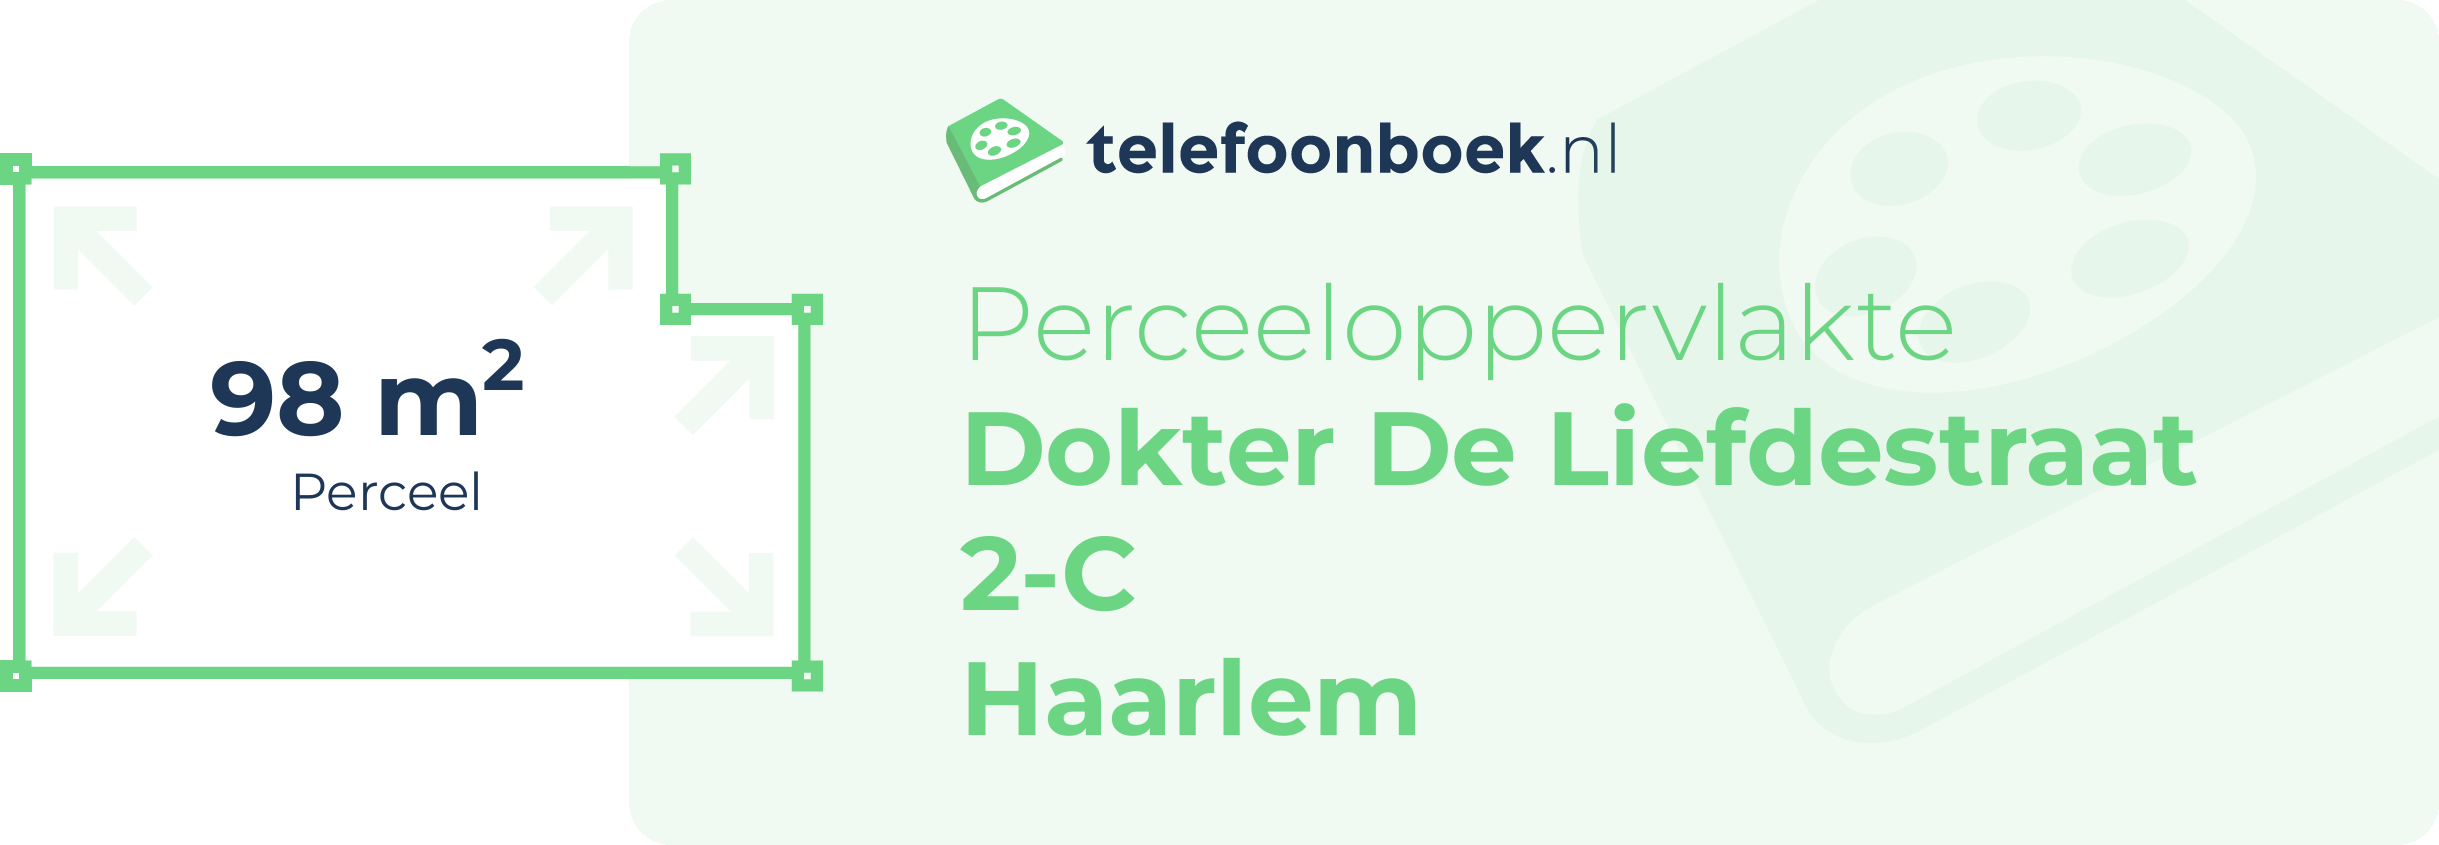 Perceeloppervlakte Dokter De Liefdestraat 2-C Haarlem